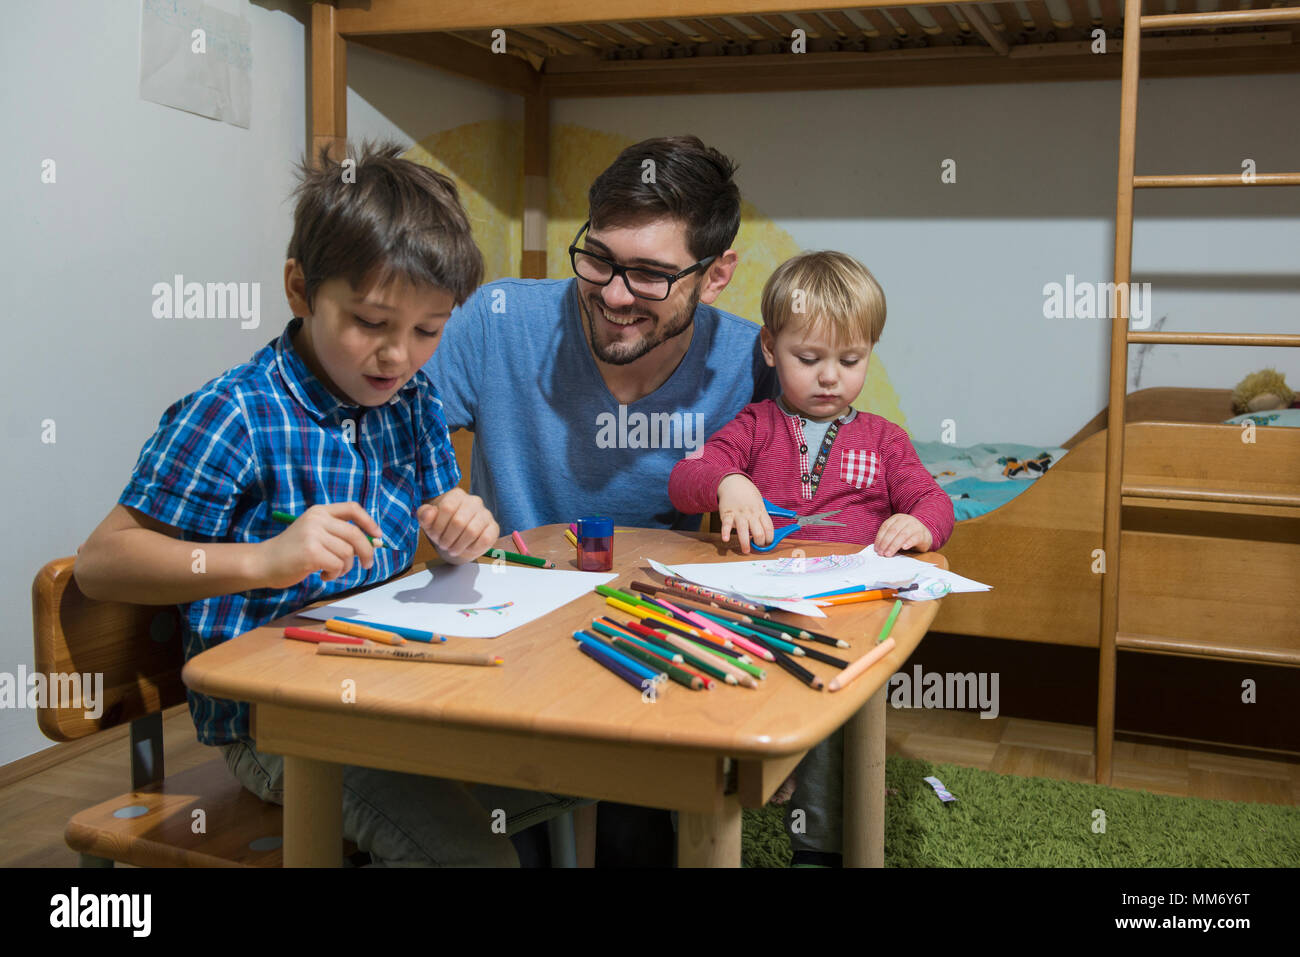 Fratelli godendo di disegnare con matite colorate mentre il padre è sorridente, Monaco di Baviera, Germania Foto Stock